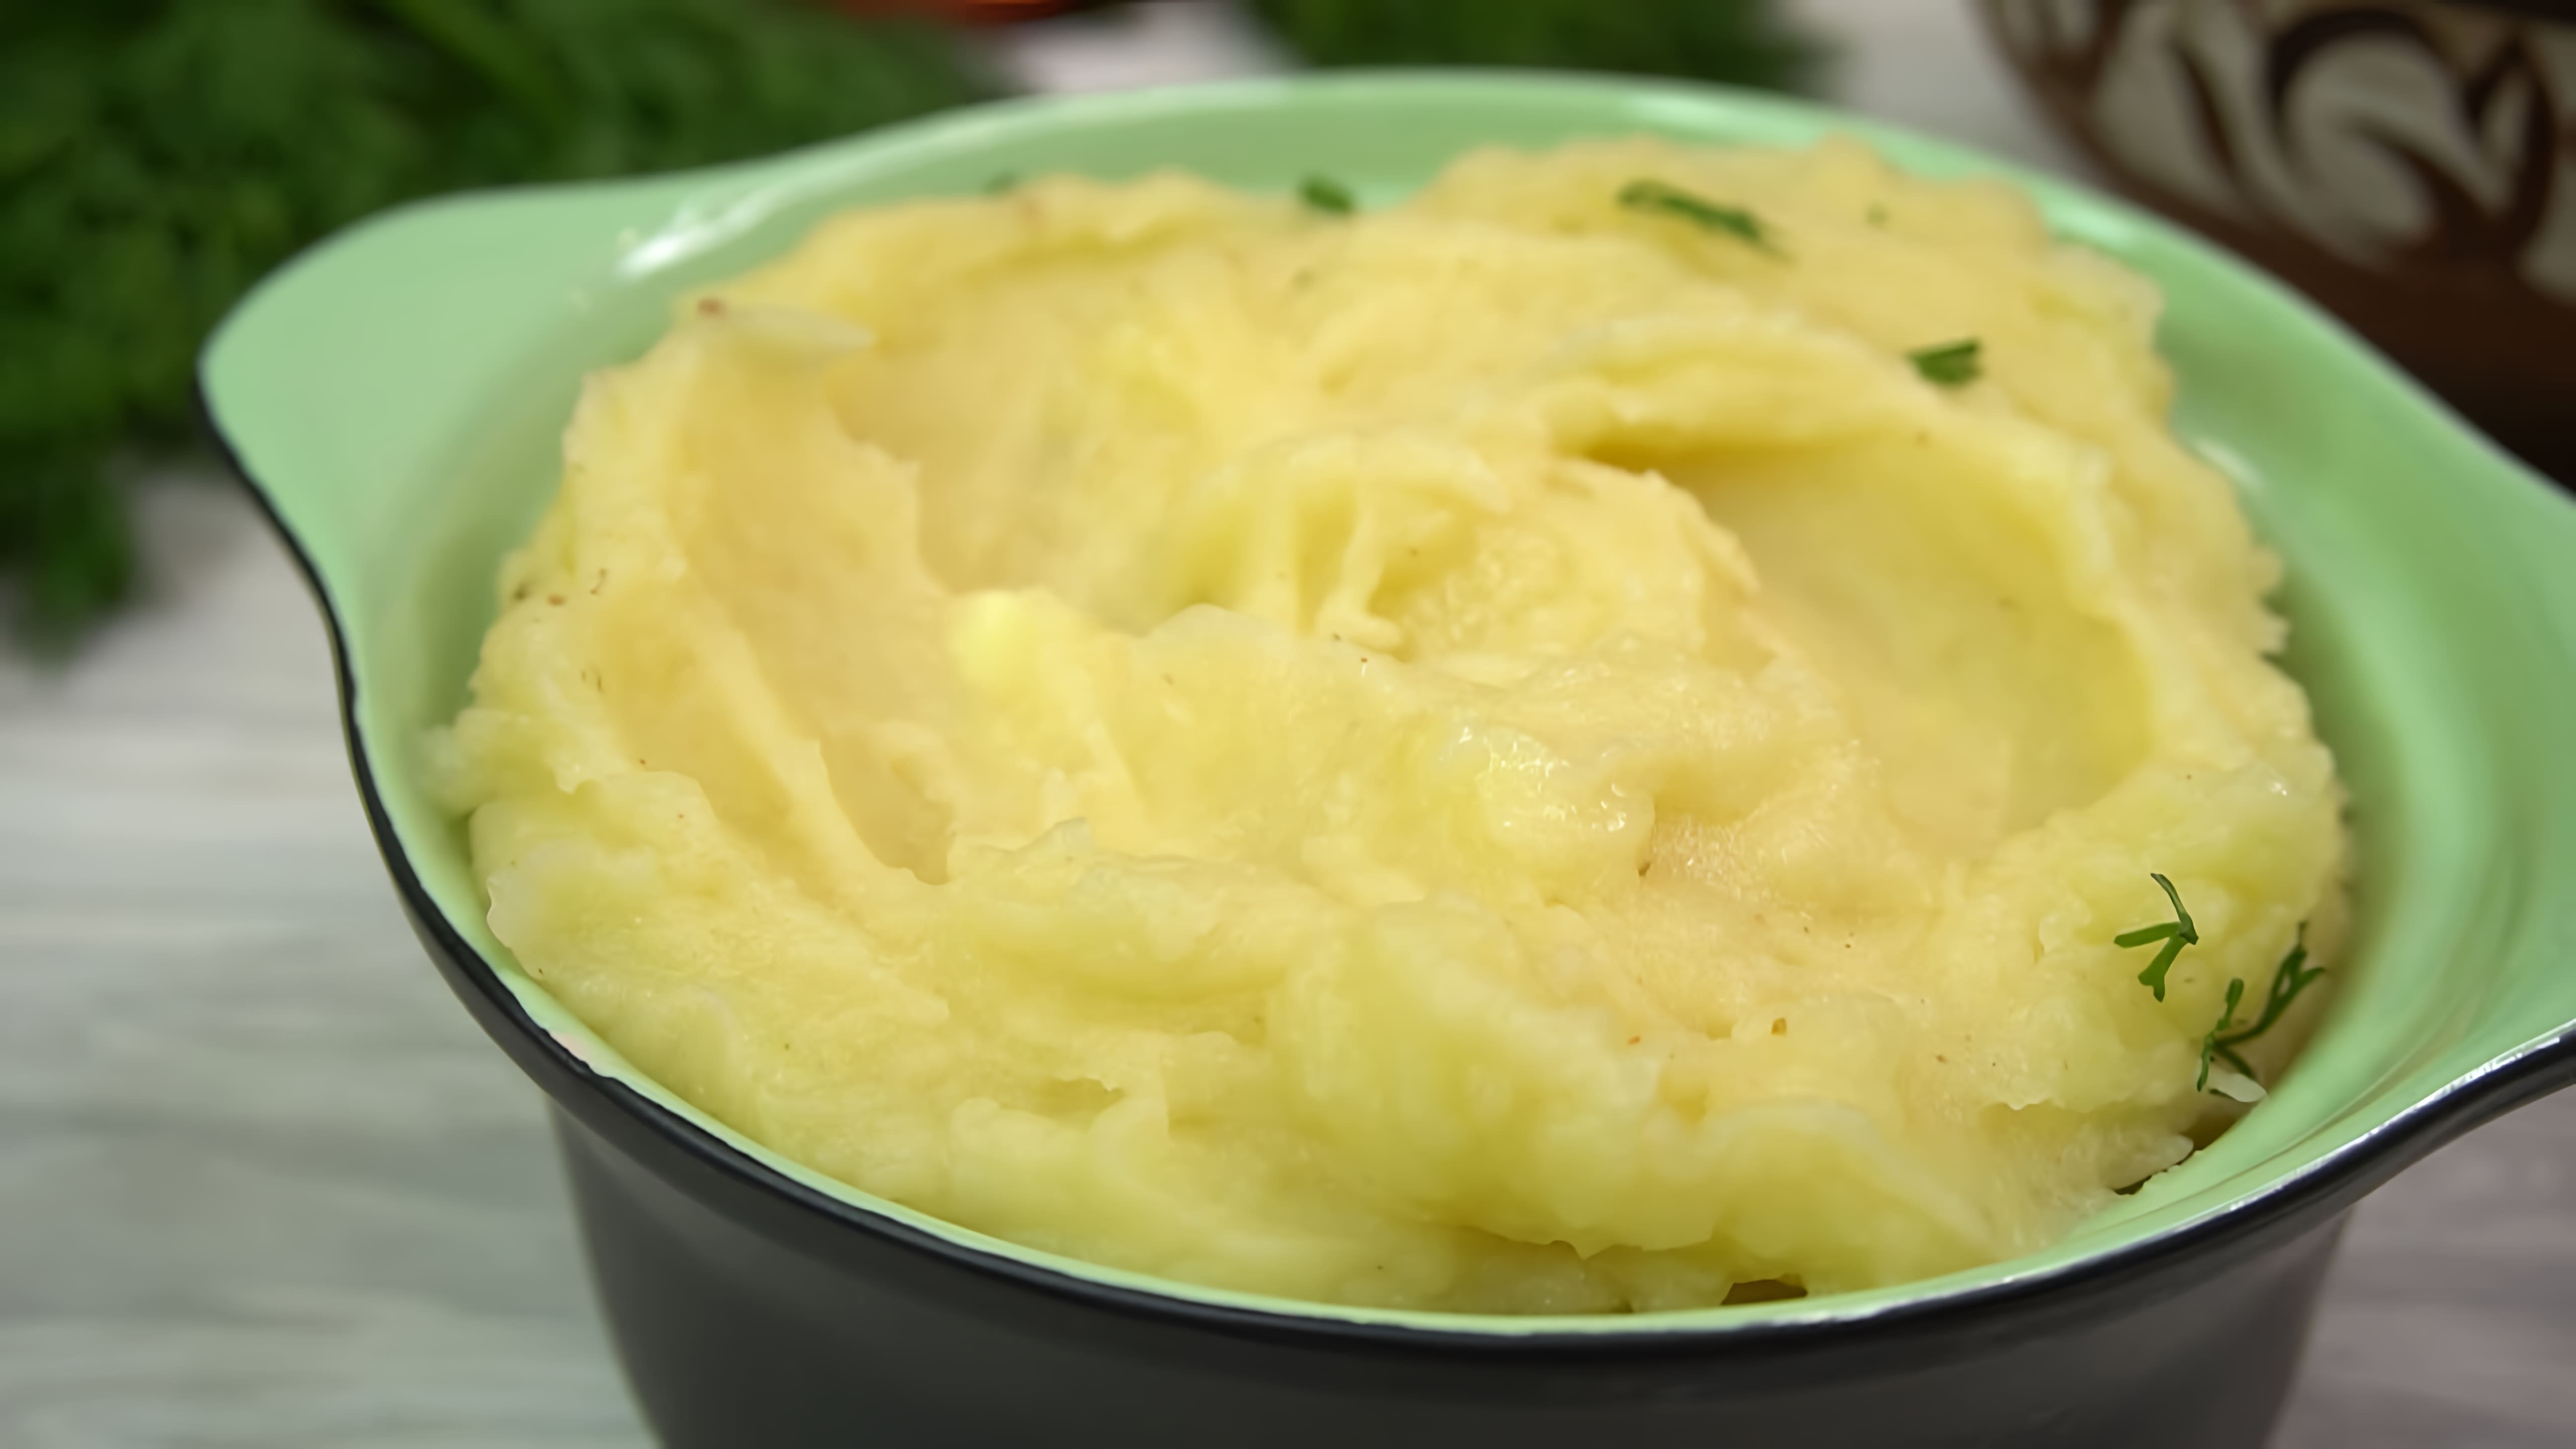 В этом видео демонстрируется рецепт приготовления картофельного пюре, которое называется "Самое вкусное пюре"